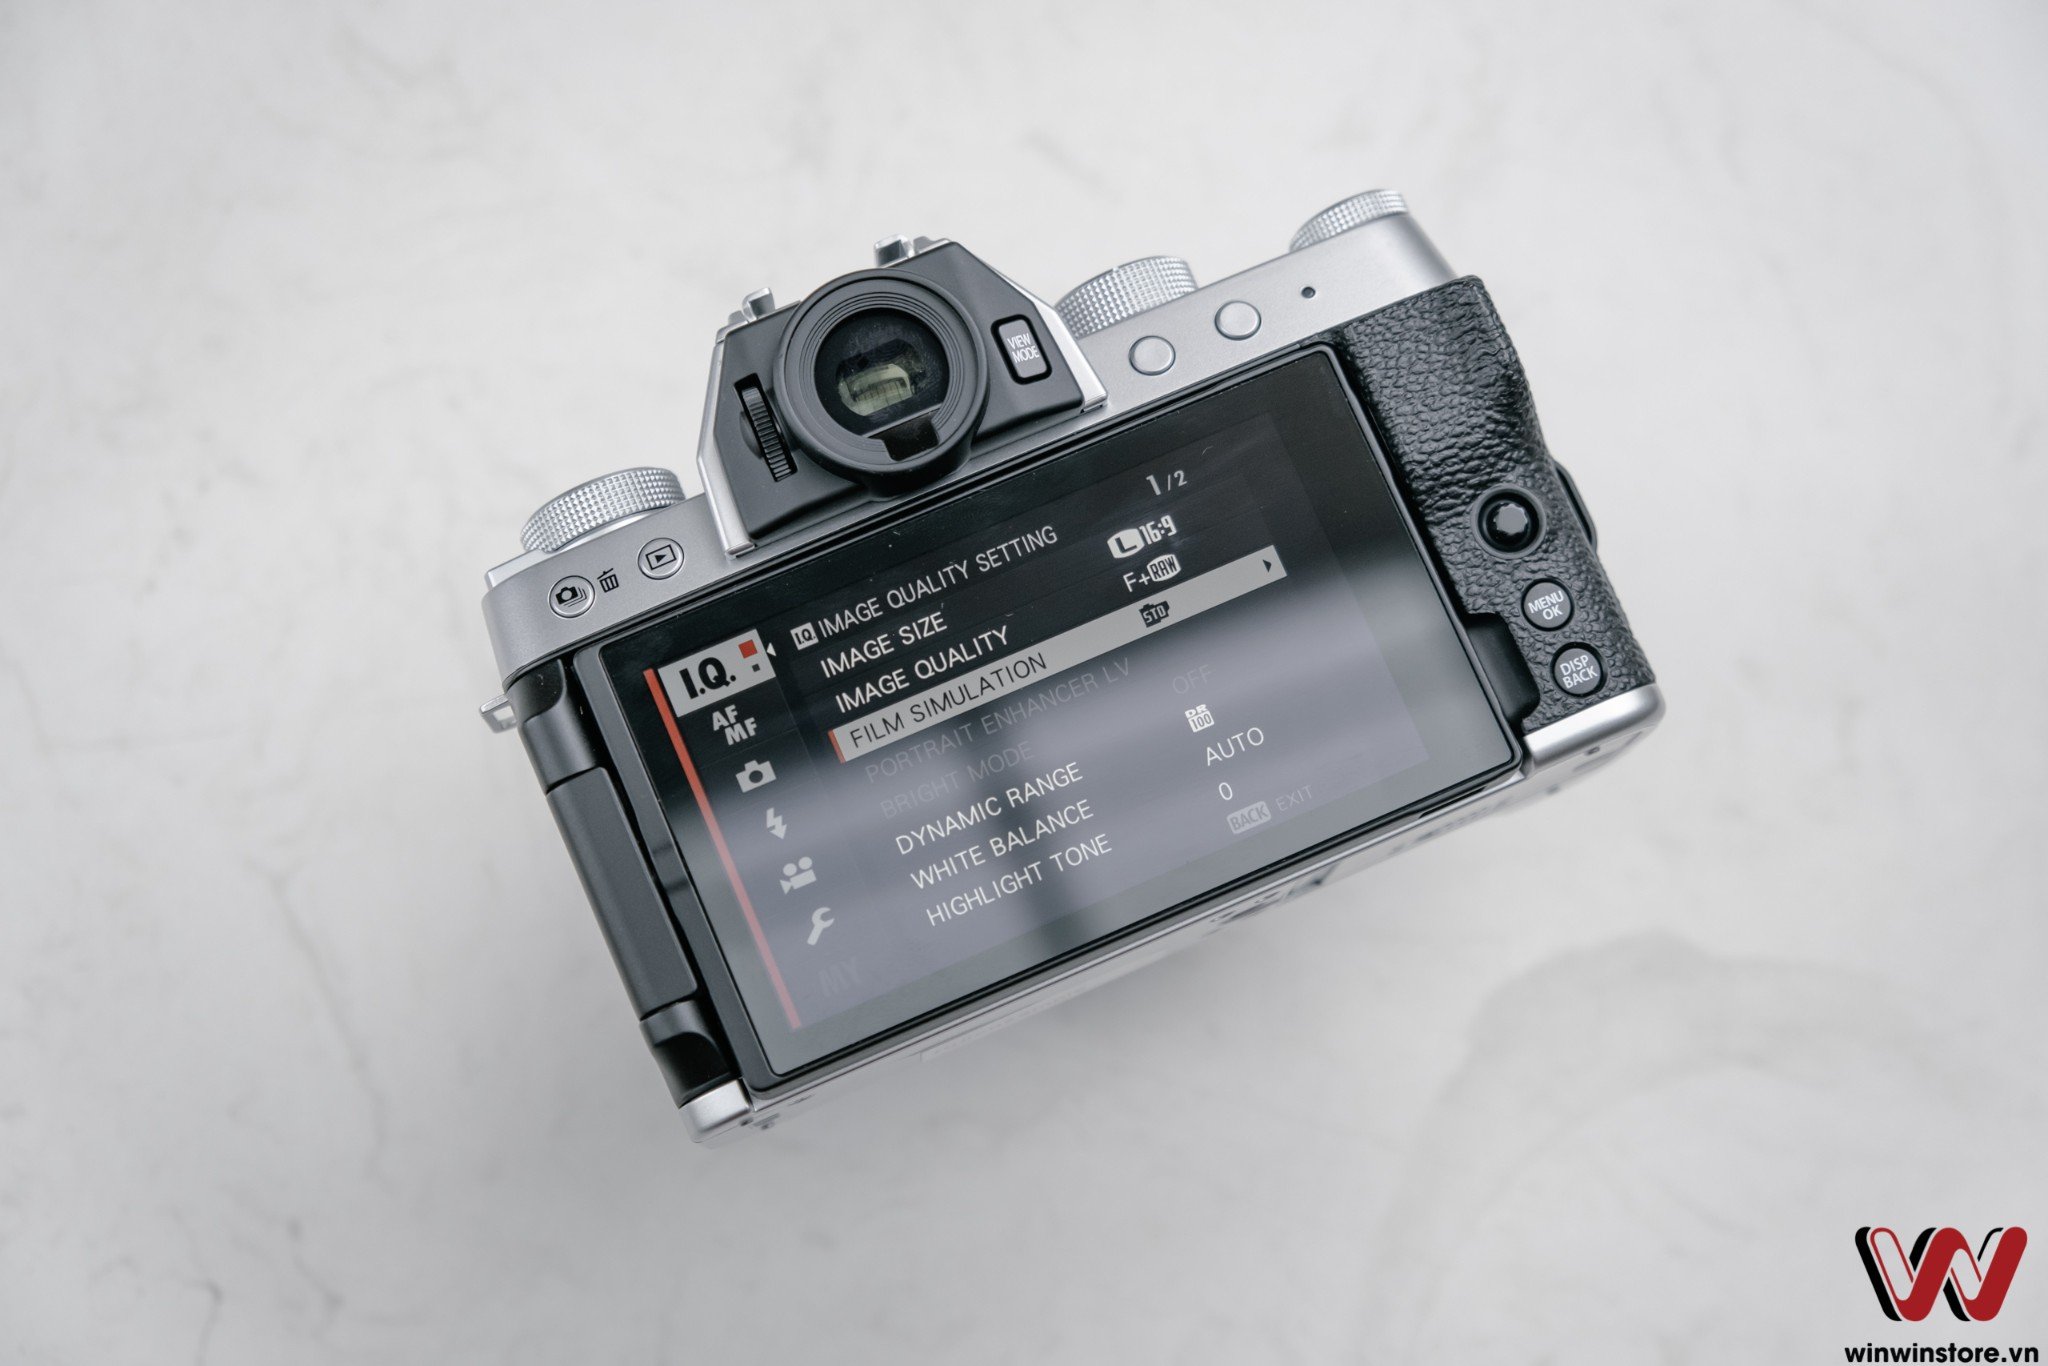 Trên tay và đánh giá nhanh Fujifilm X-T200: máy ảnh dành cho người mới